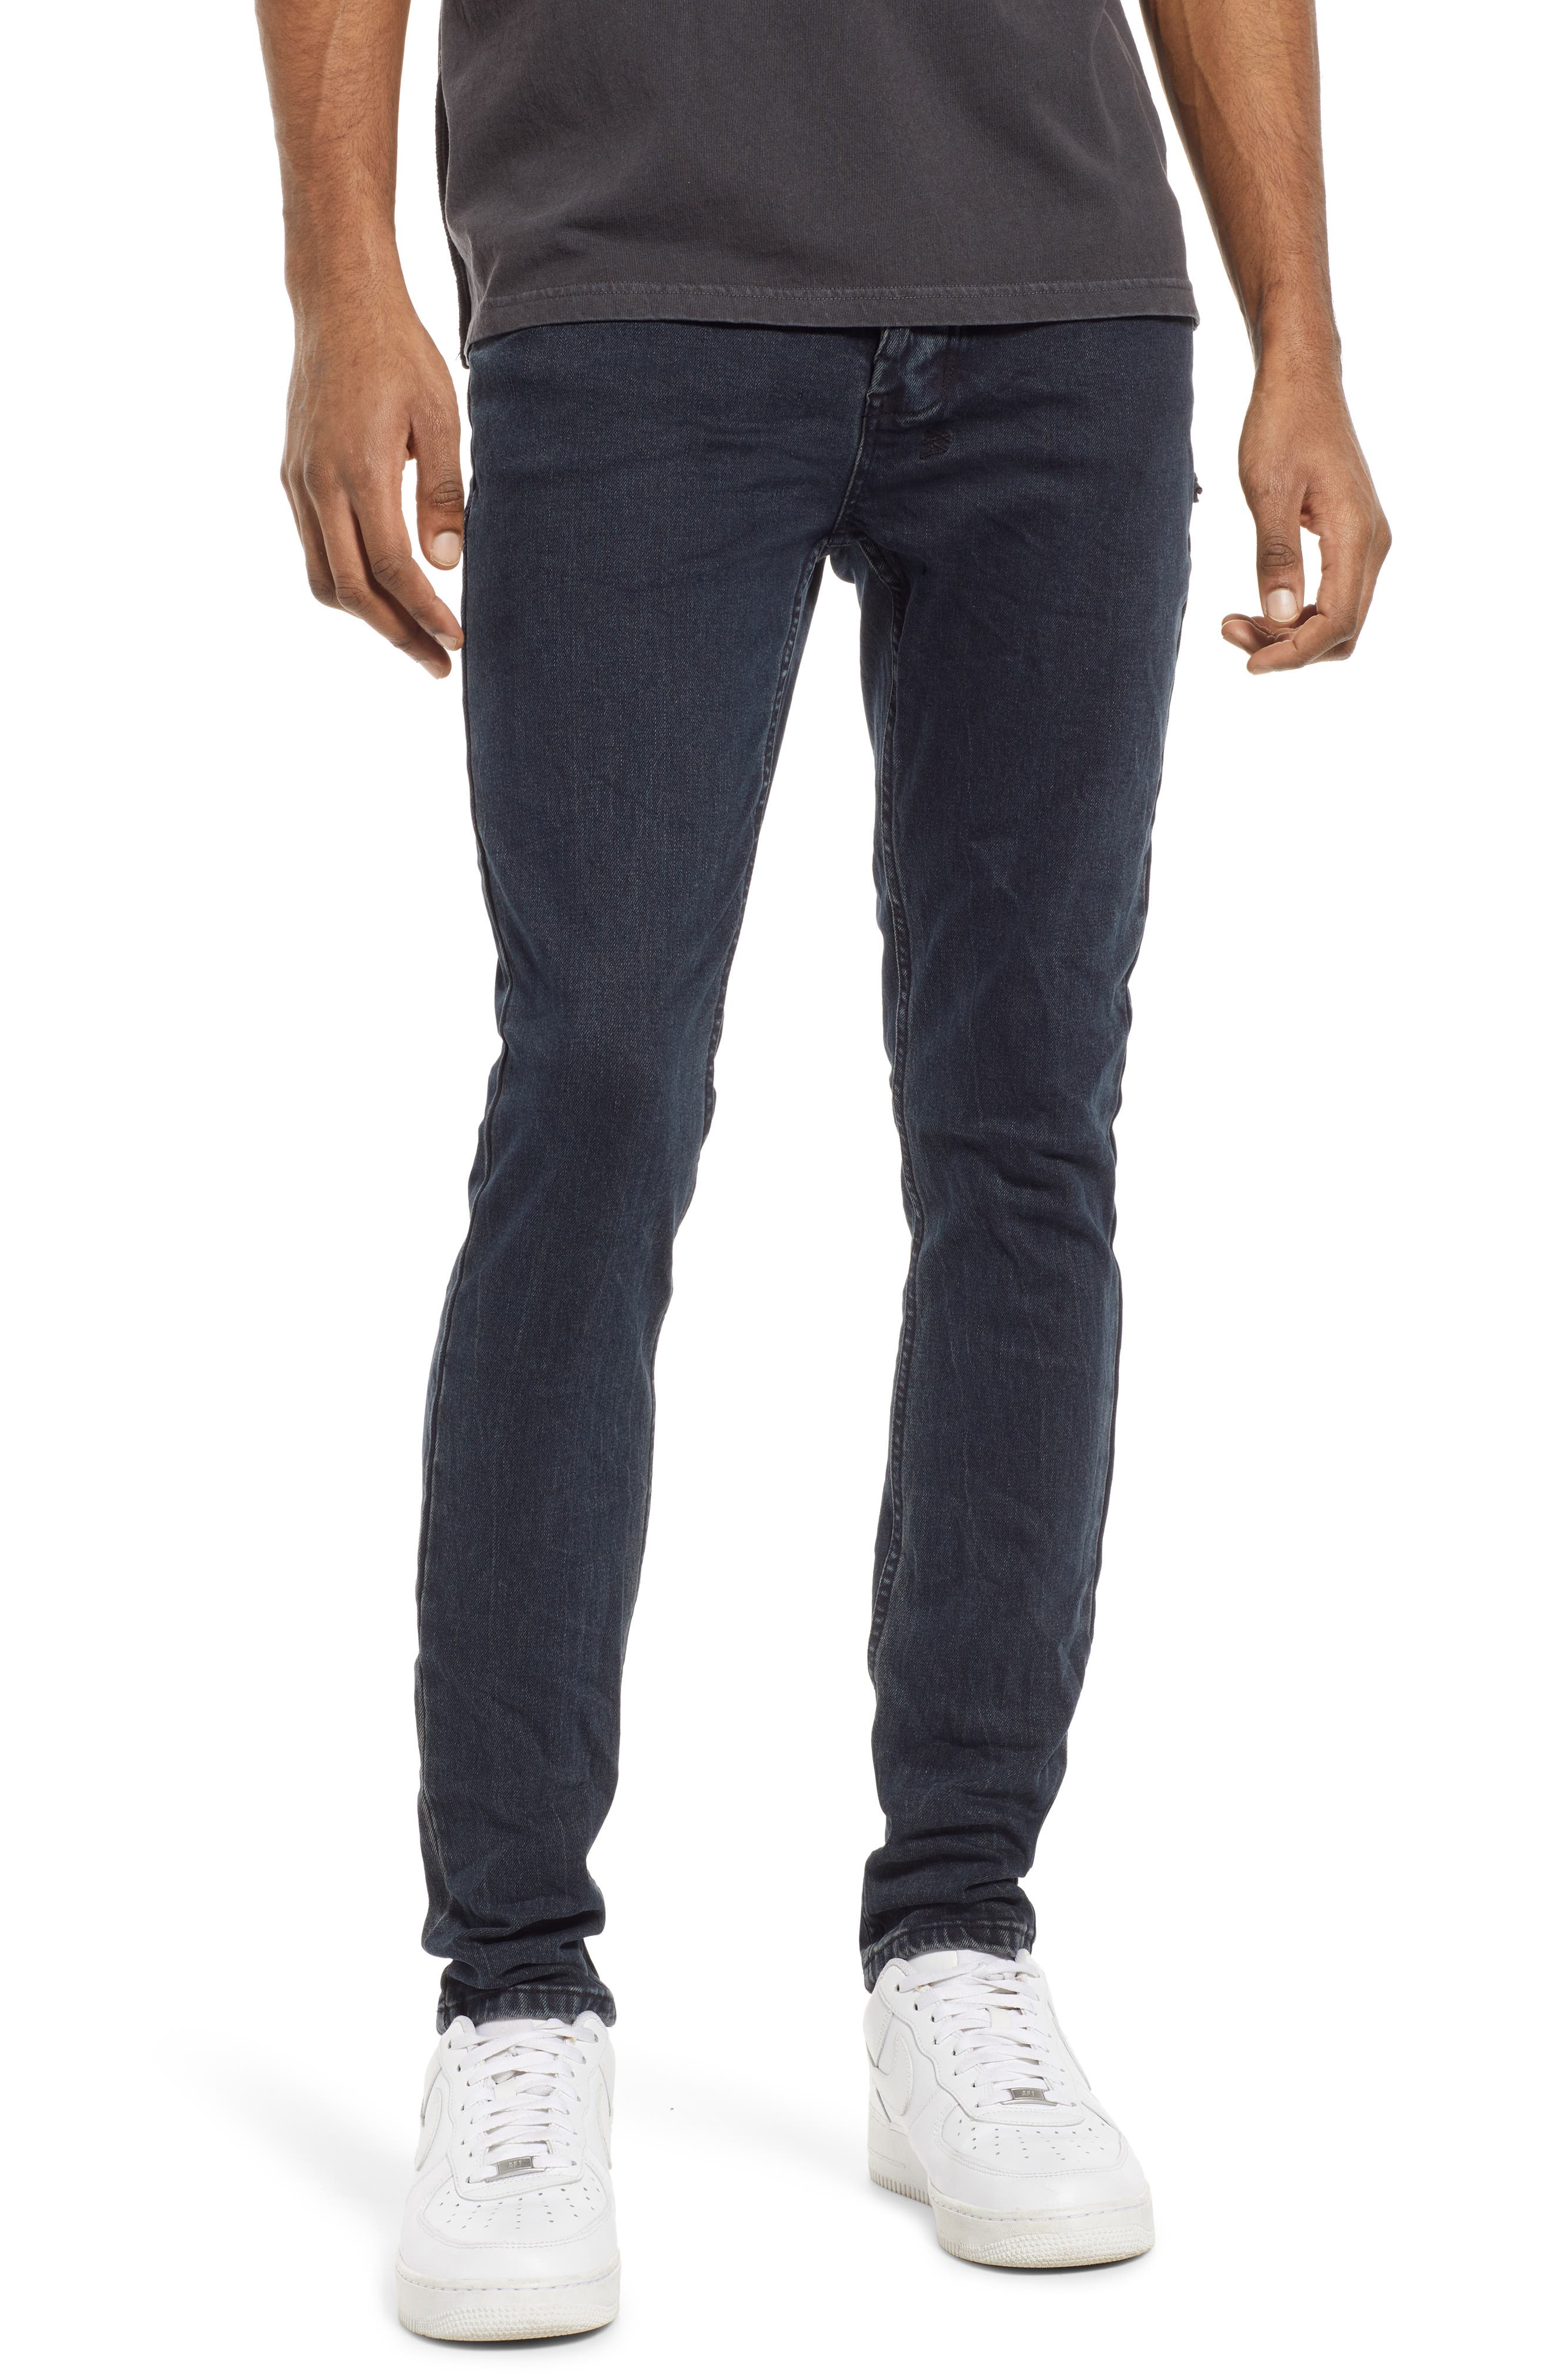 Ksubi Van Winkle Skinny Jeans in Denim at Nordstrom, Size 28